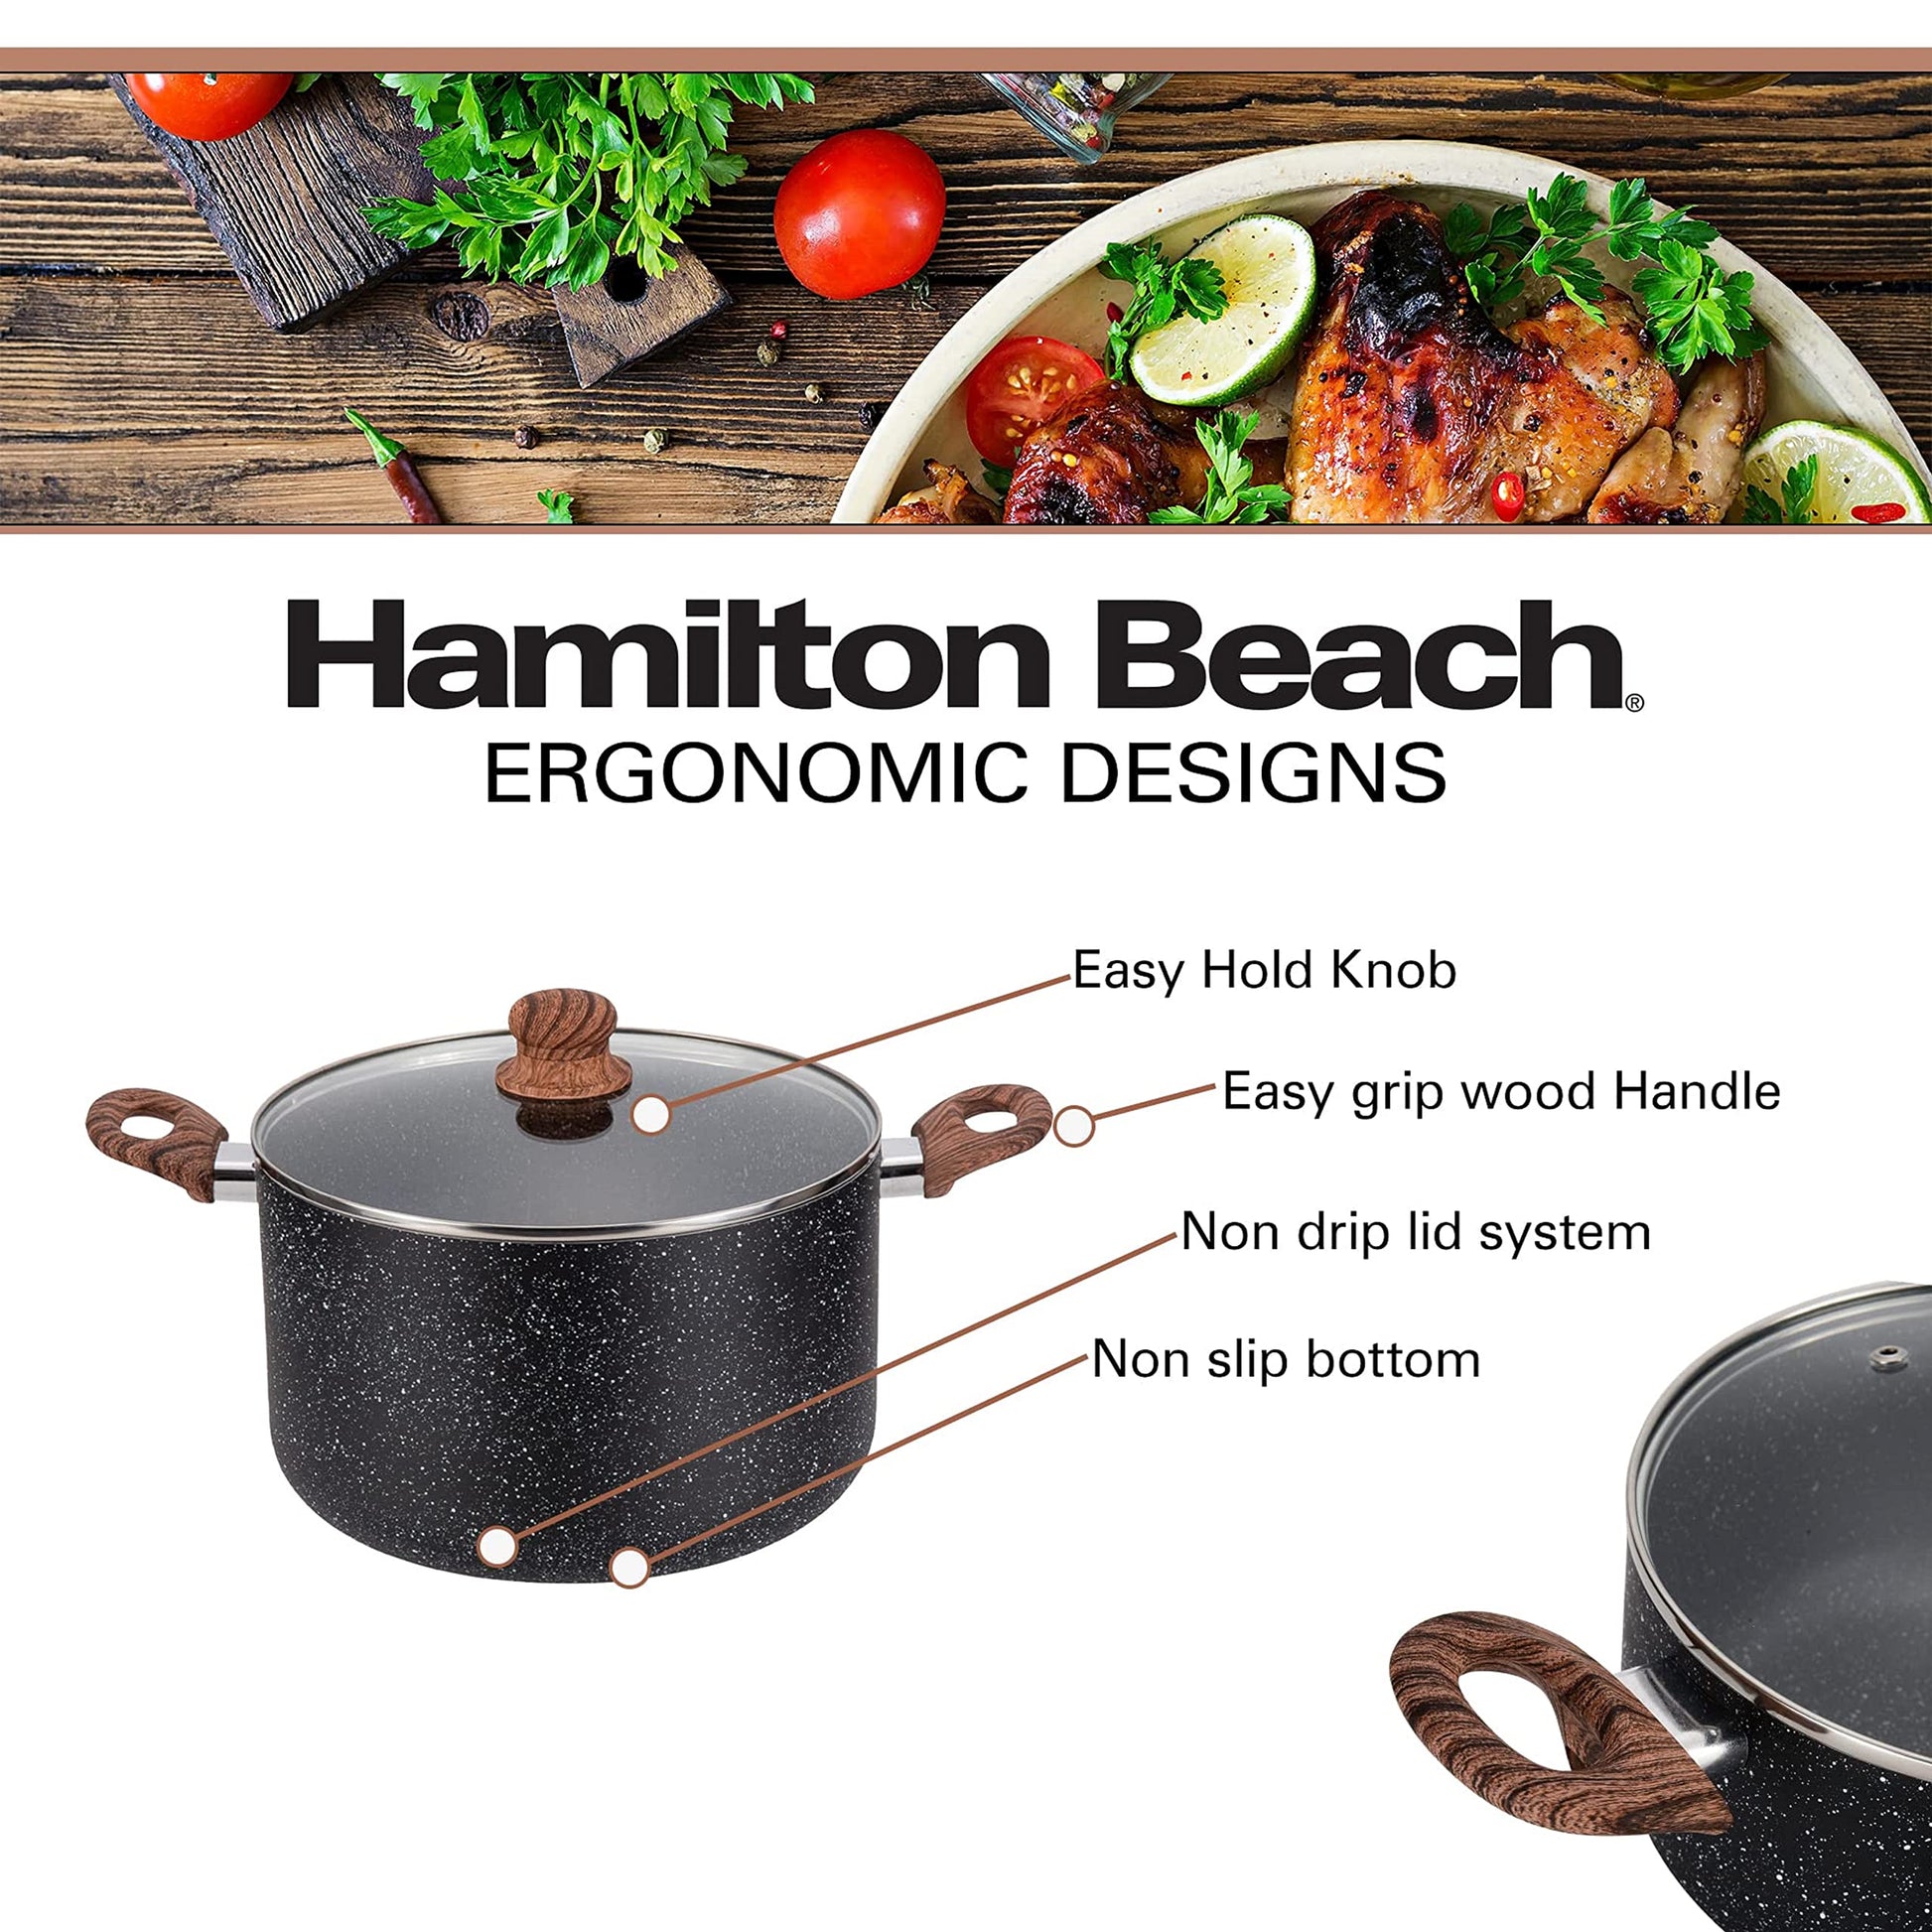 Hamilton Beach 8.5 Quart Aluminum Nonstick Dutch Oven Pot with Glass Lid,  Red, 1 Piece - Harris Teeter